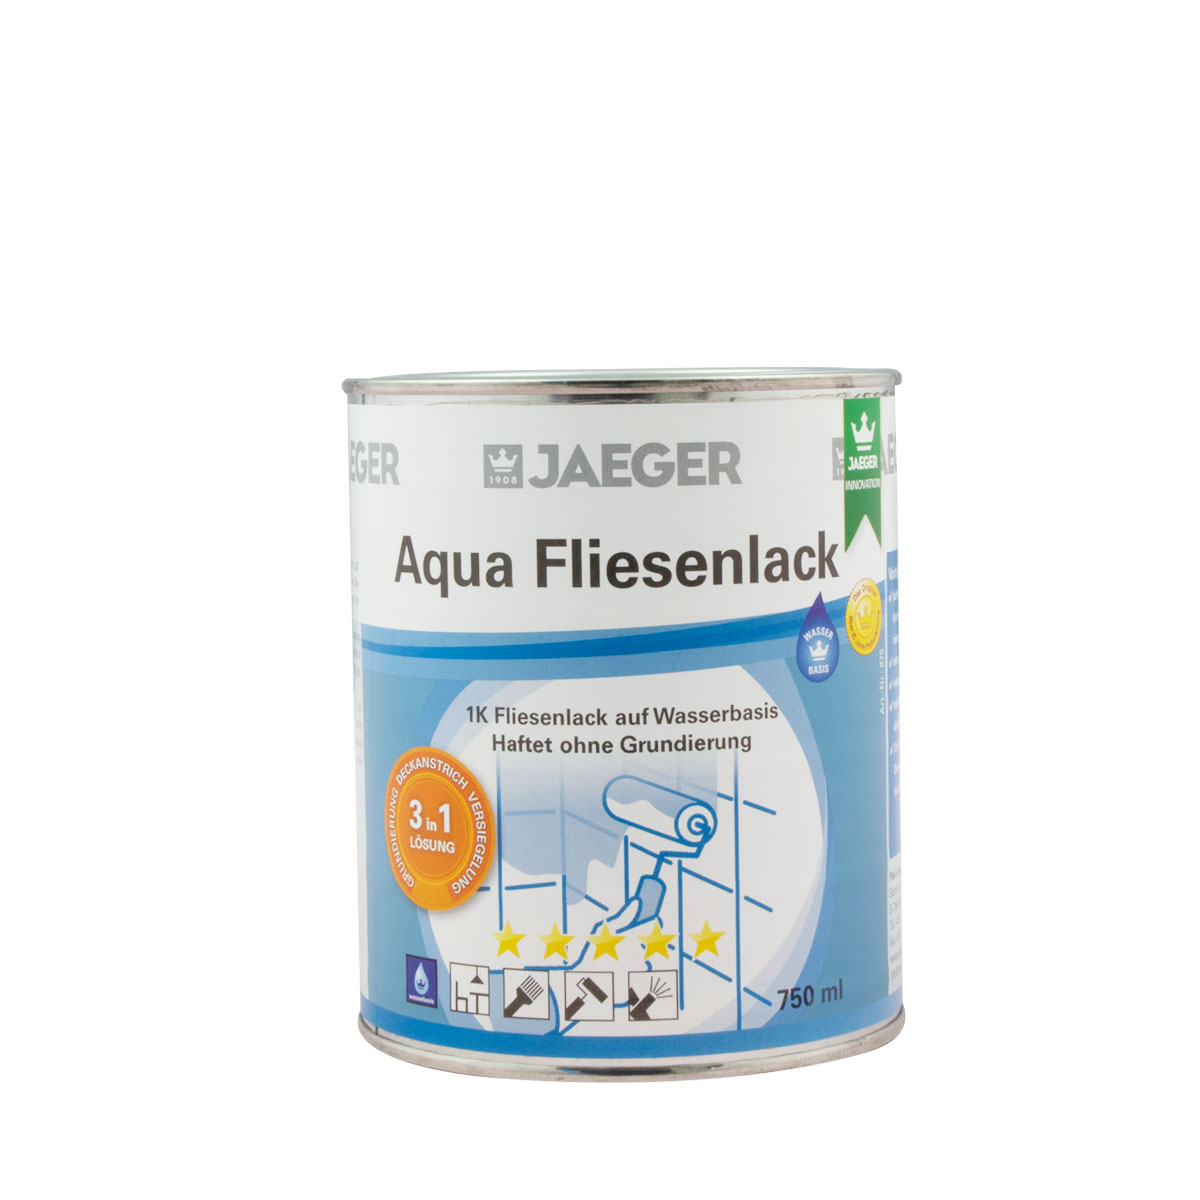 Jaeger Aqua Fliesenlack 875 neve (weiss) 750ml, 3 in 1 System